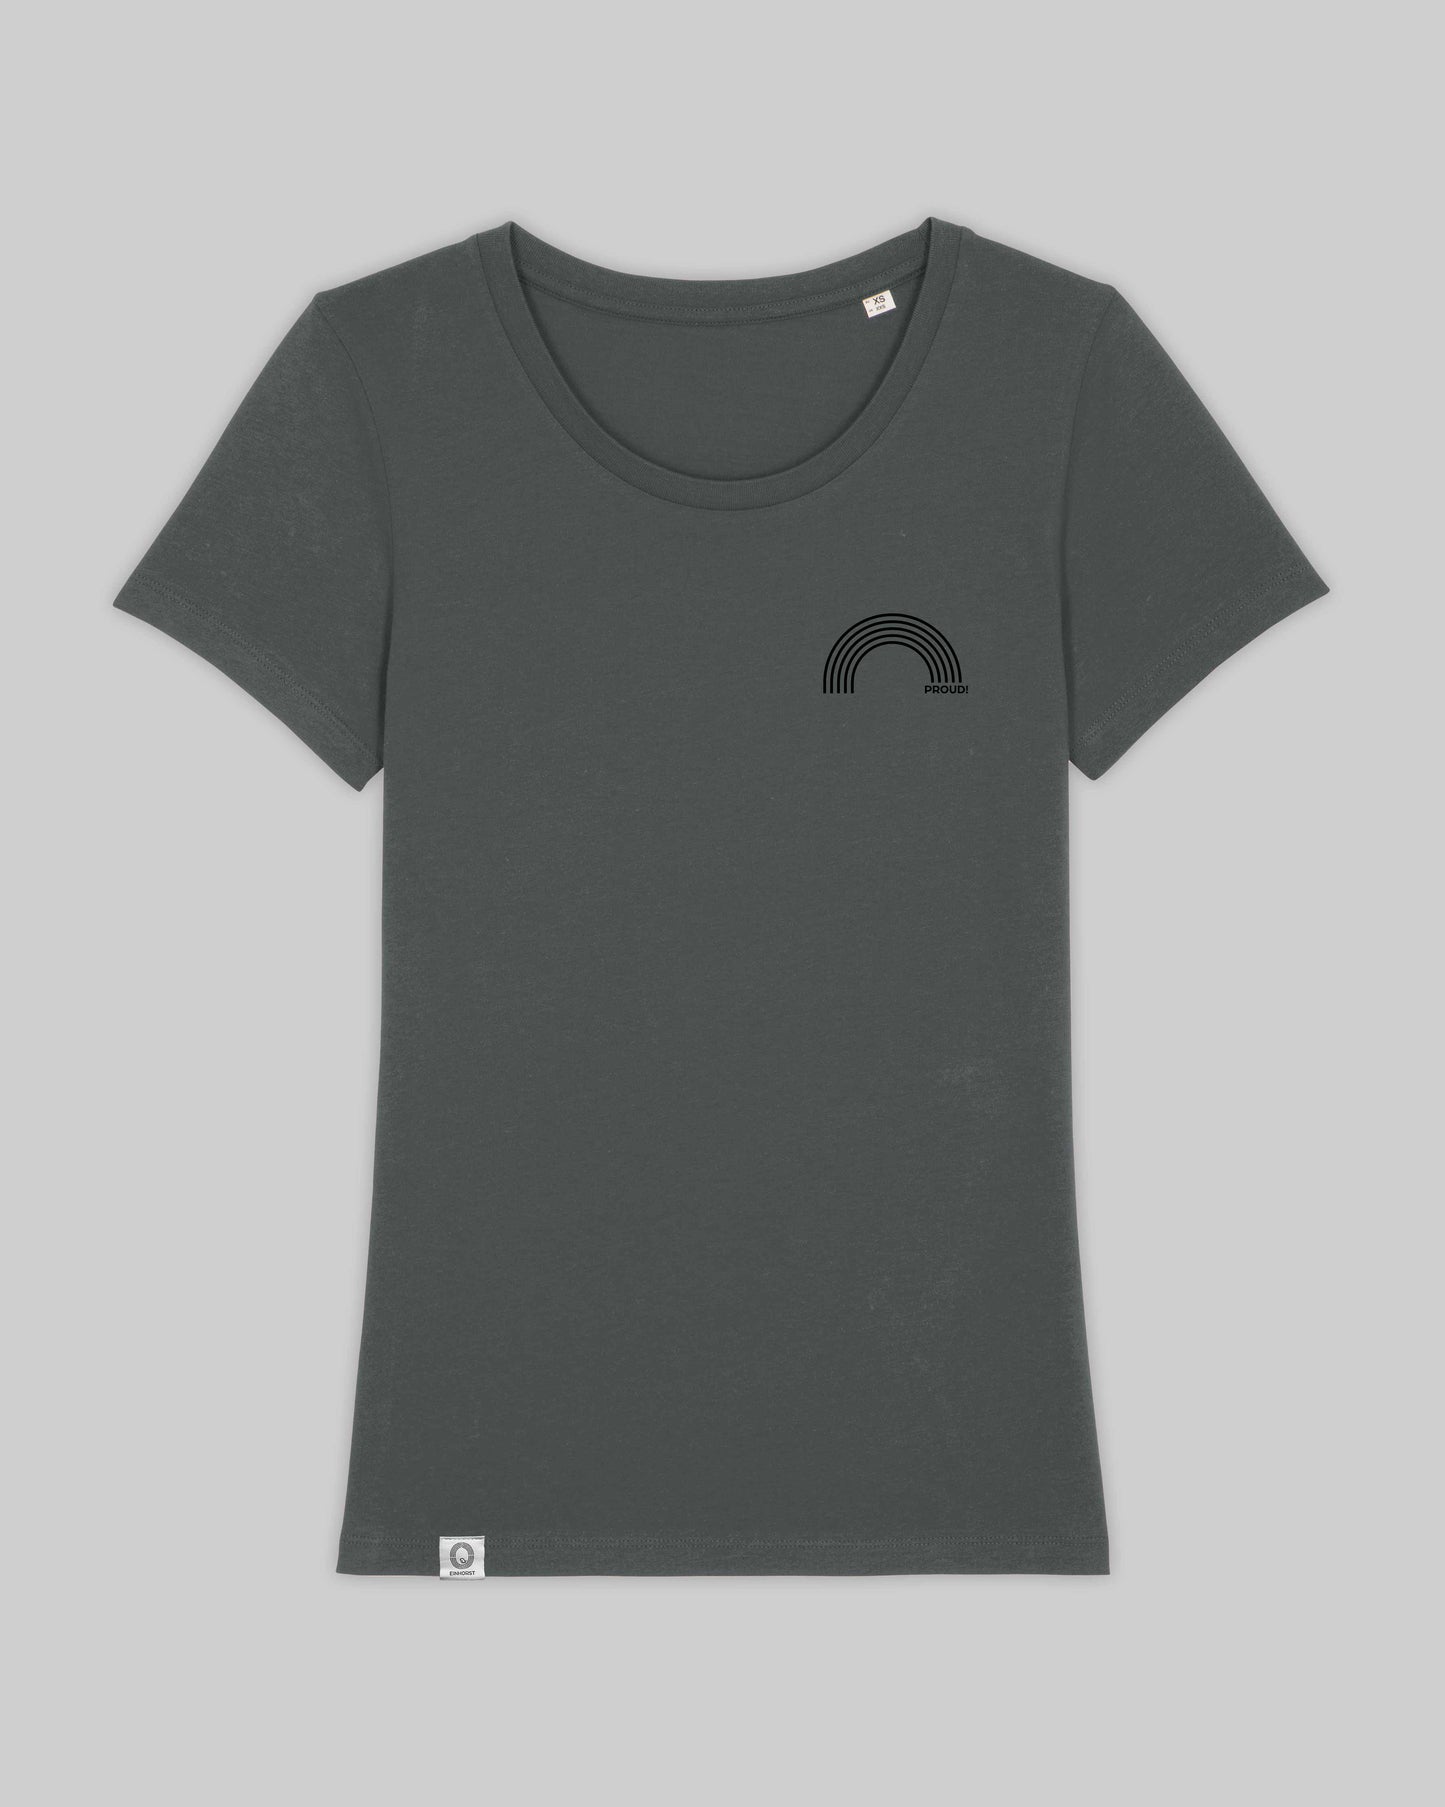 EINHORST® Organic Shirt tailliert in "Anthracite" mit dem Motiv "proud Regenbogen" in der Kombination schwarzer Regenbogen mit schwarzer Schrift, Bild von Shirt von vorne